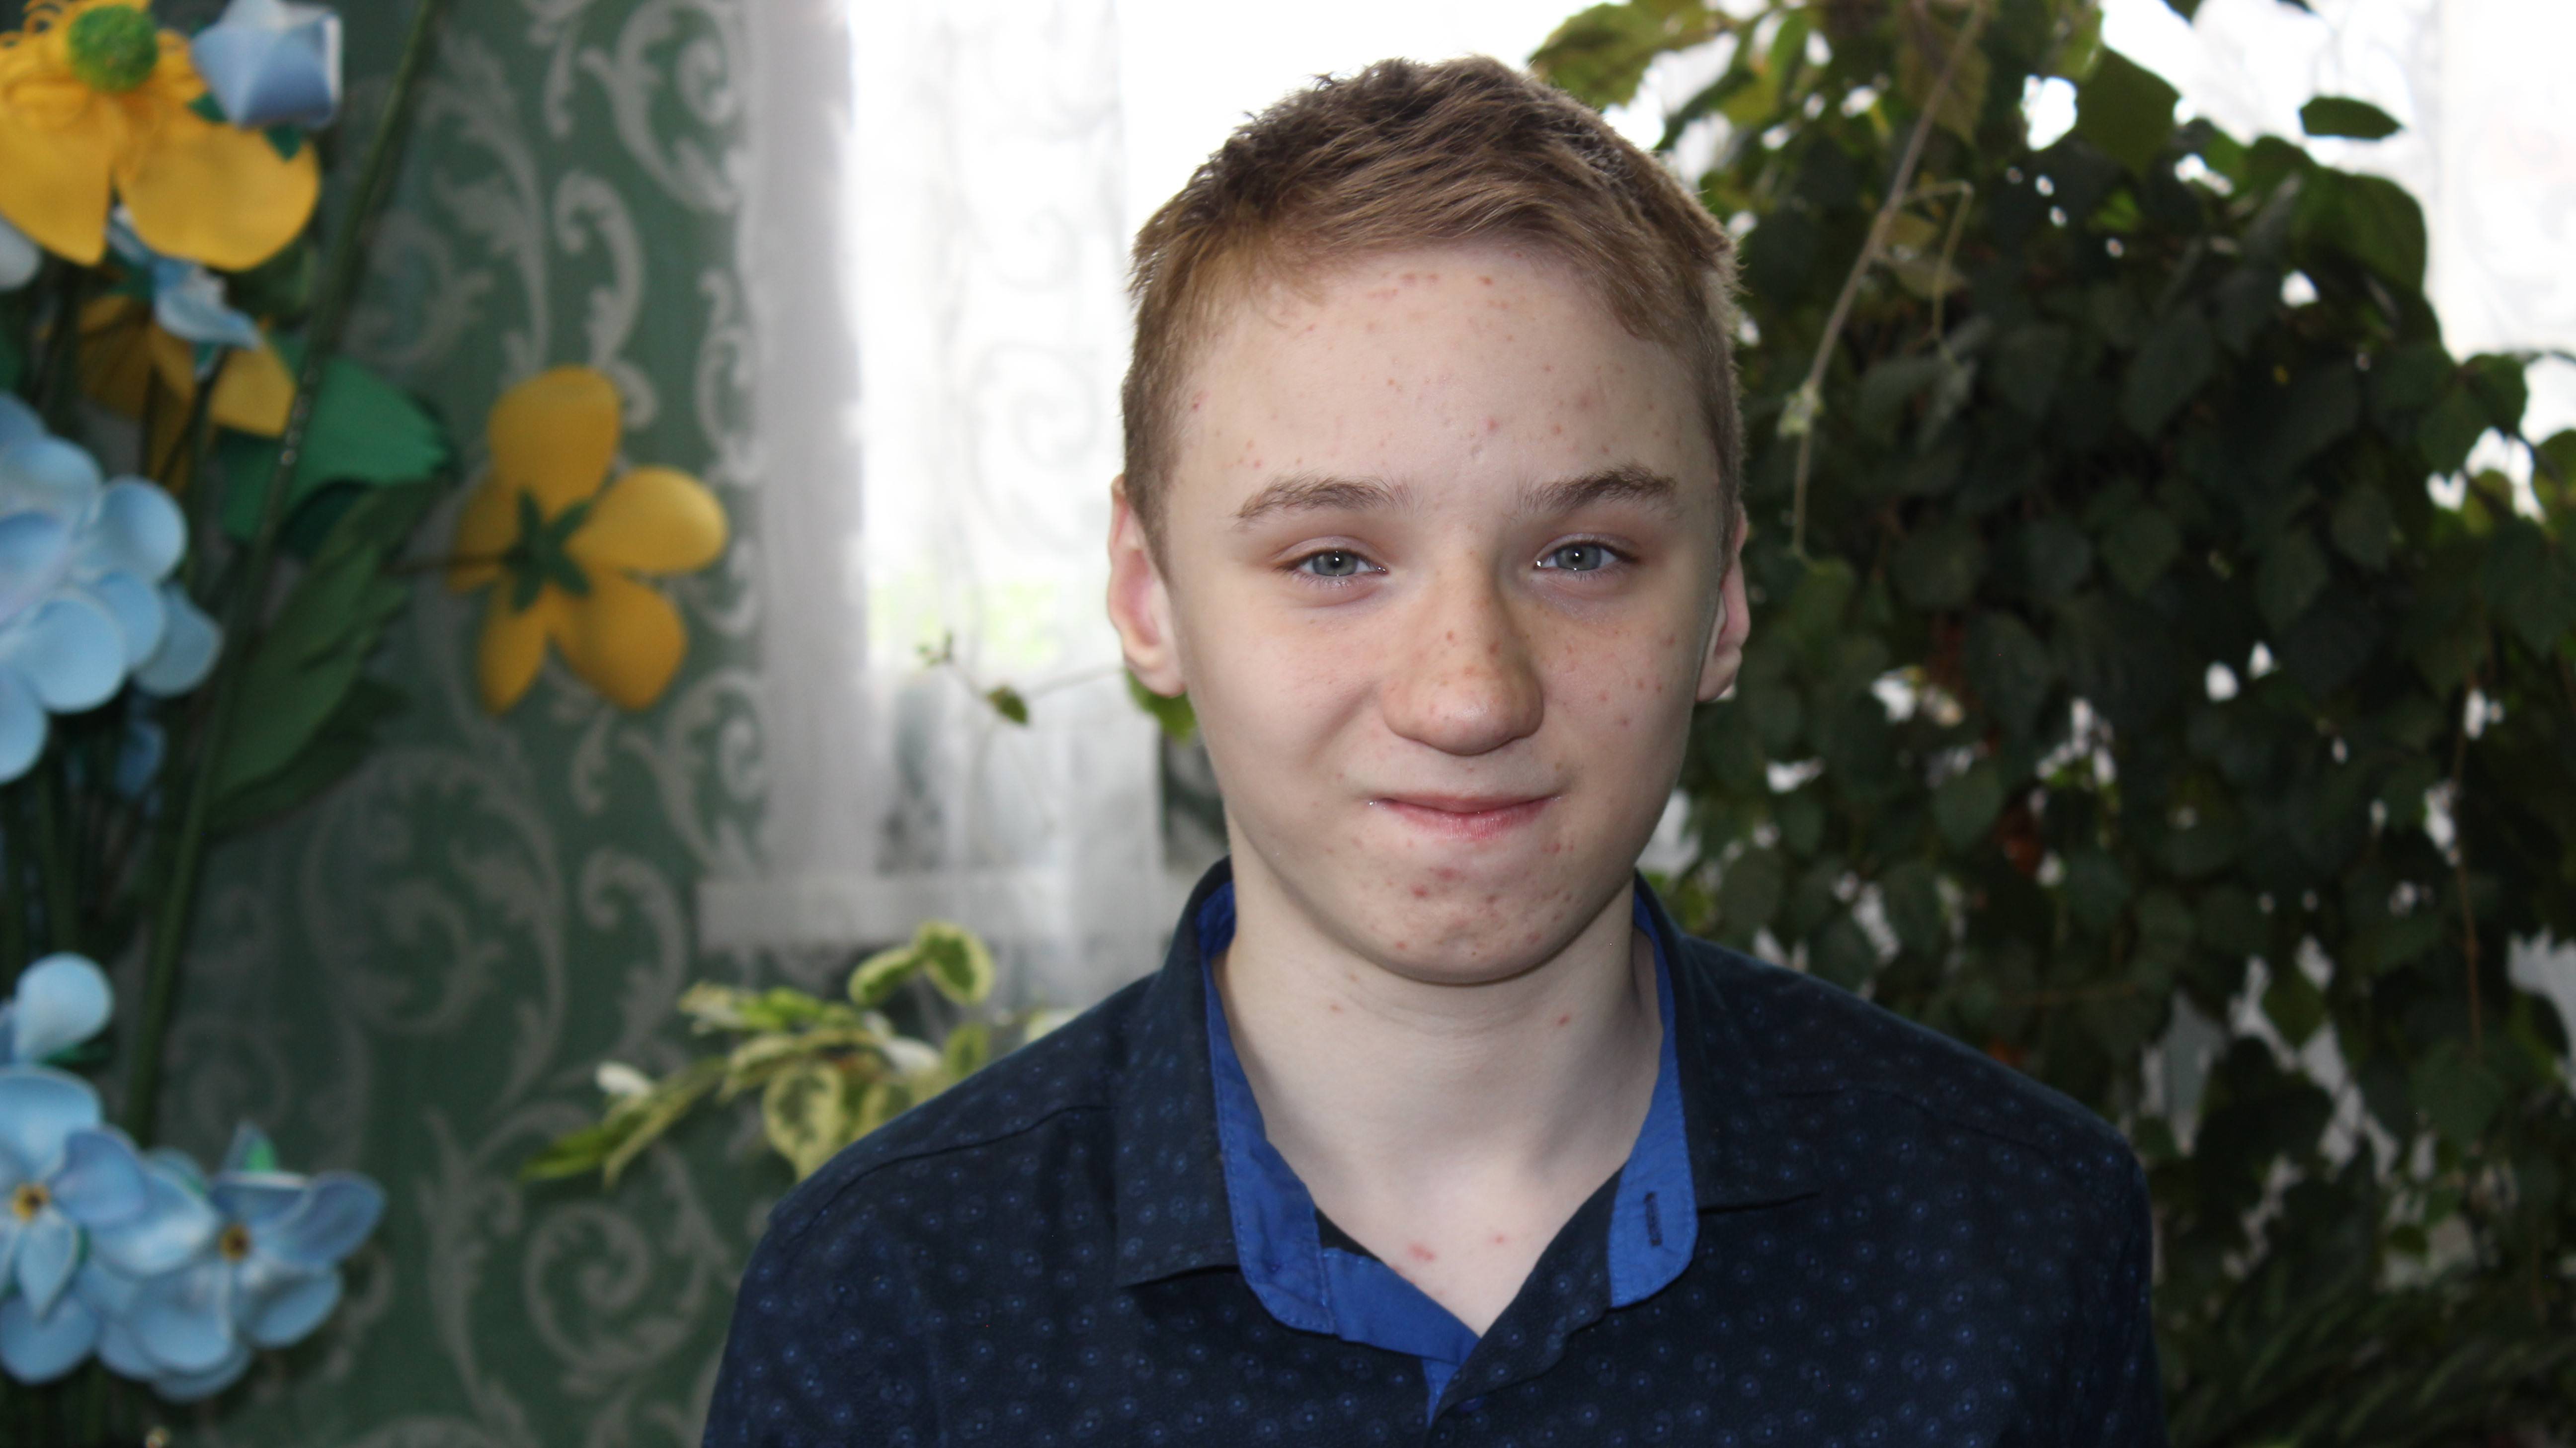 Лев, 13 лет (видео-анкета)